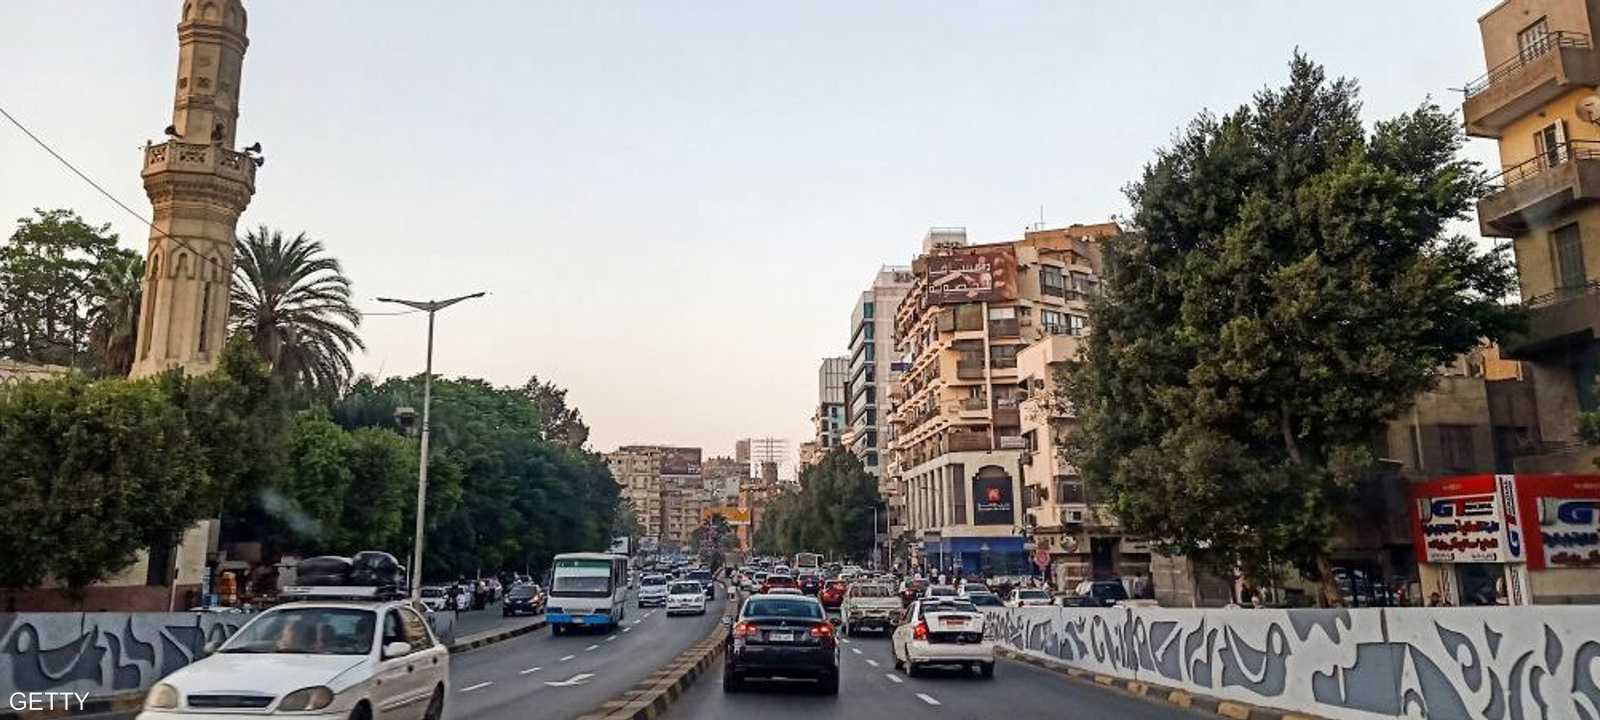 مصر وضعت خطة للاعتماد على الغاز الطبيعي بدلا من البنزين